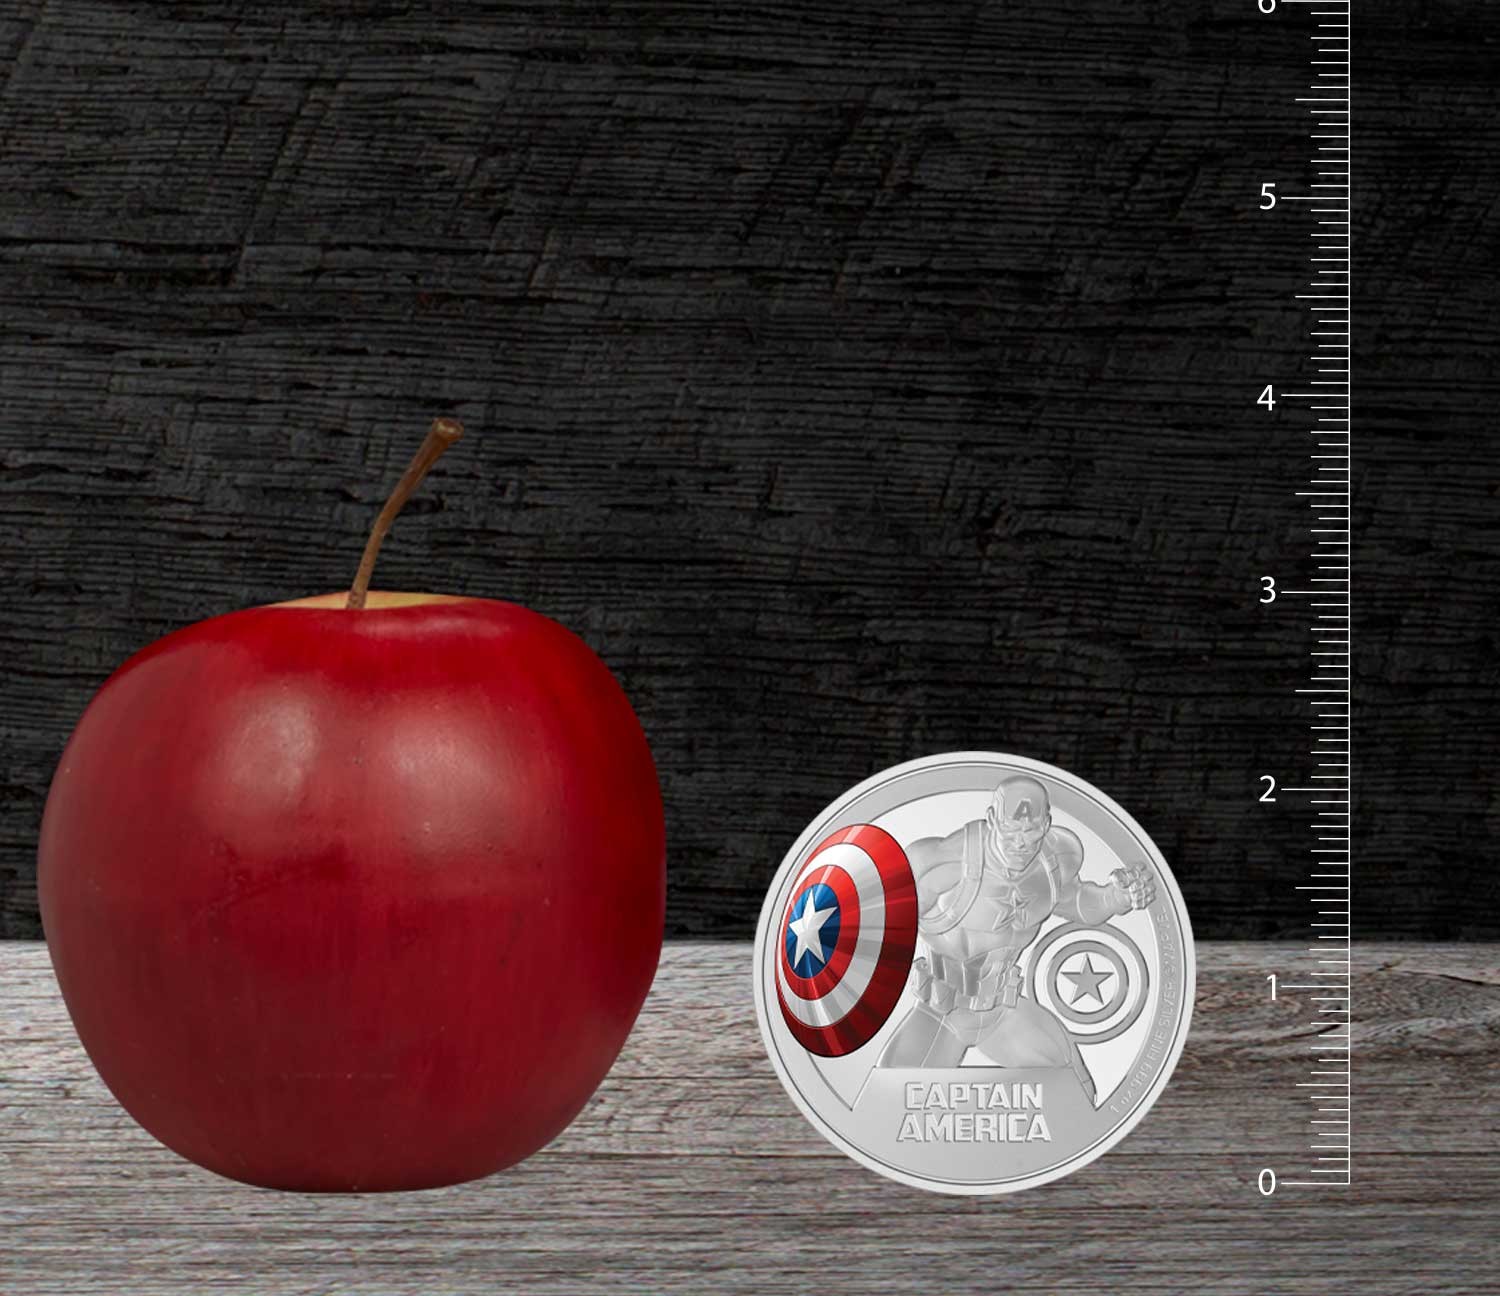 Captain America 3oz Silver Coin- Prototype Shown